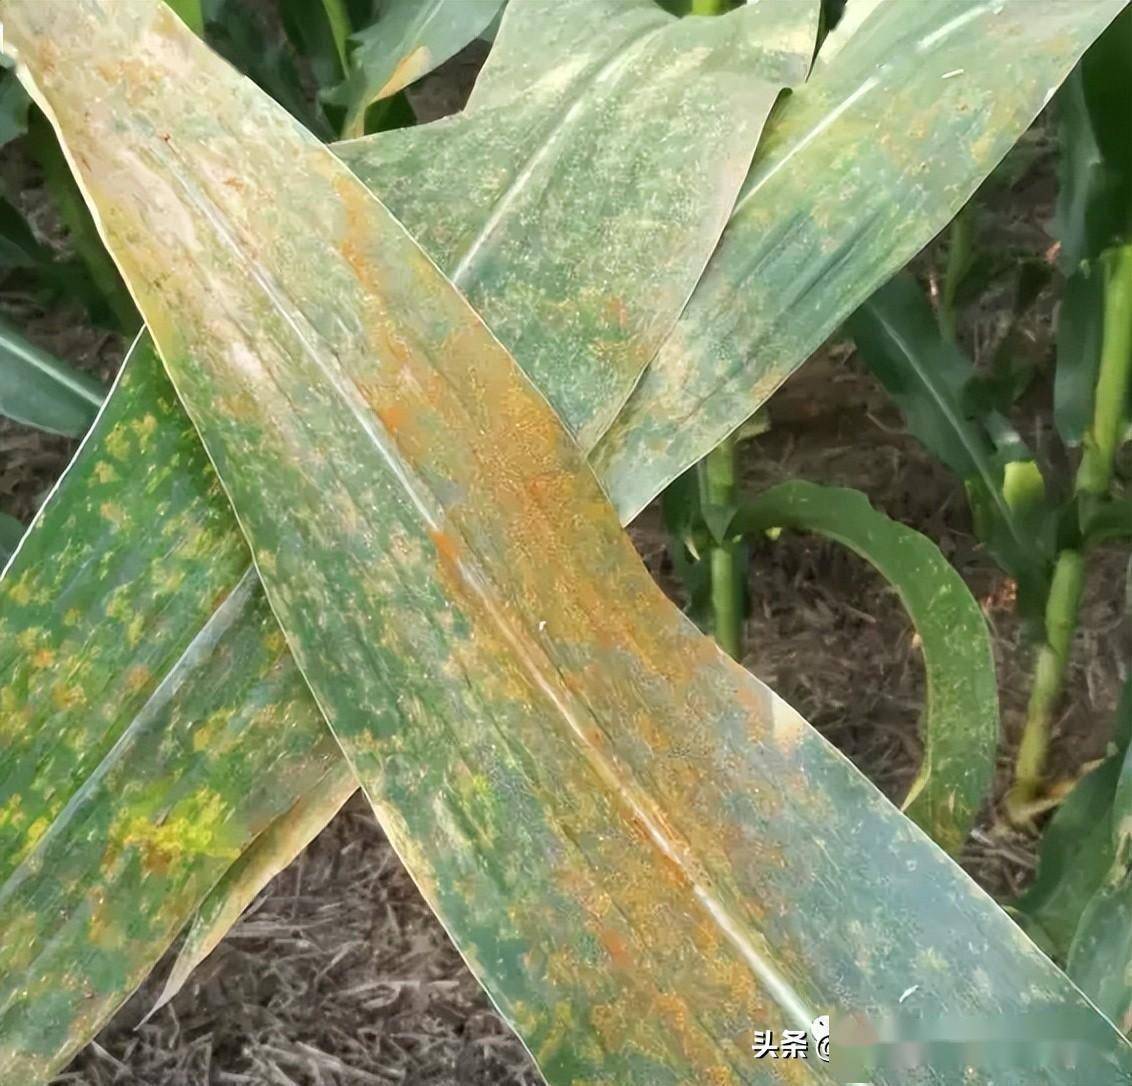 玉米叶片出现锈斑,什么原因导致的?该怎么防治